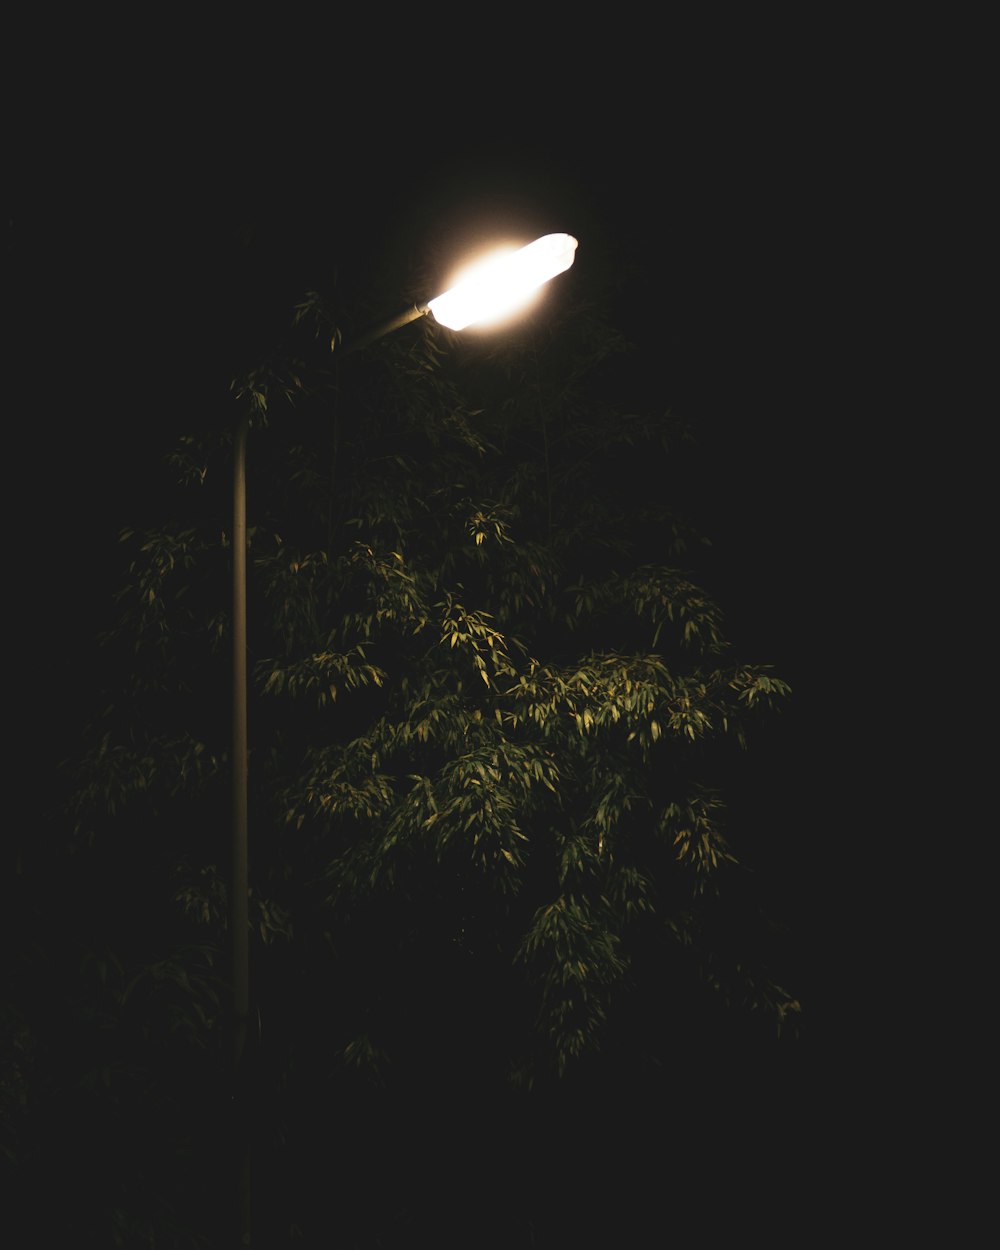 turned-on post lamp beside tree